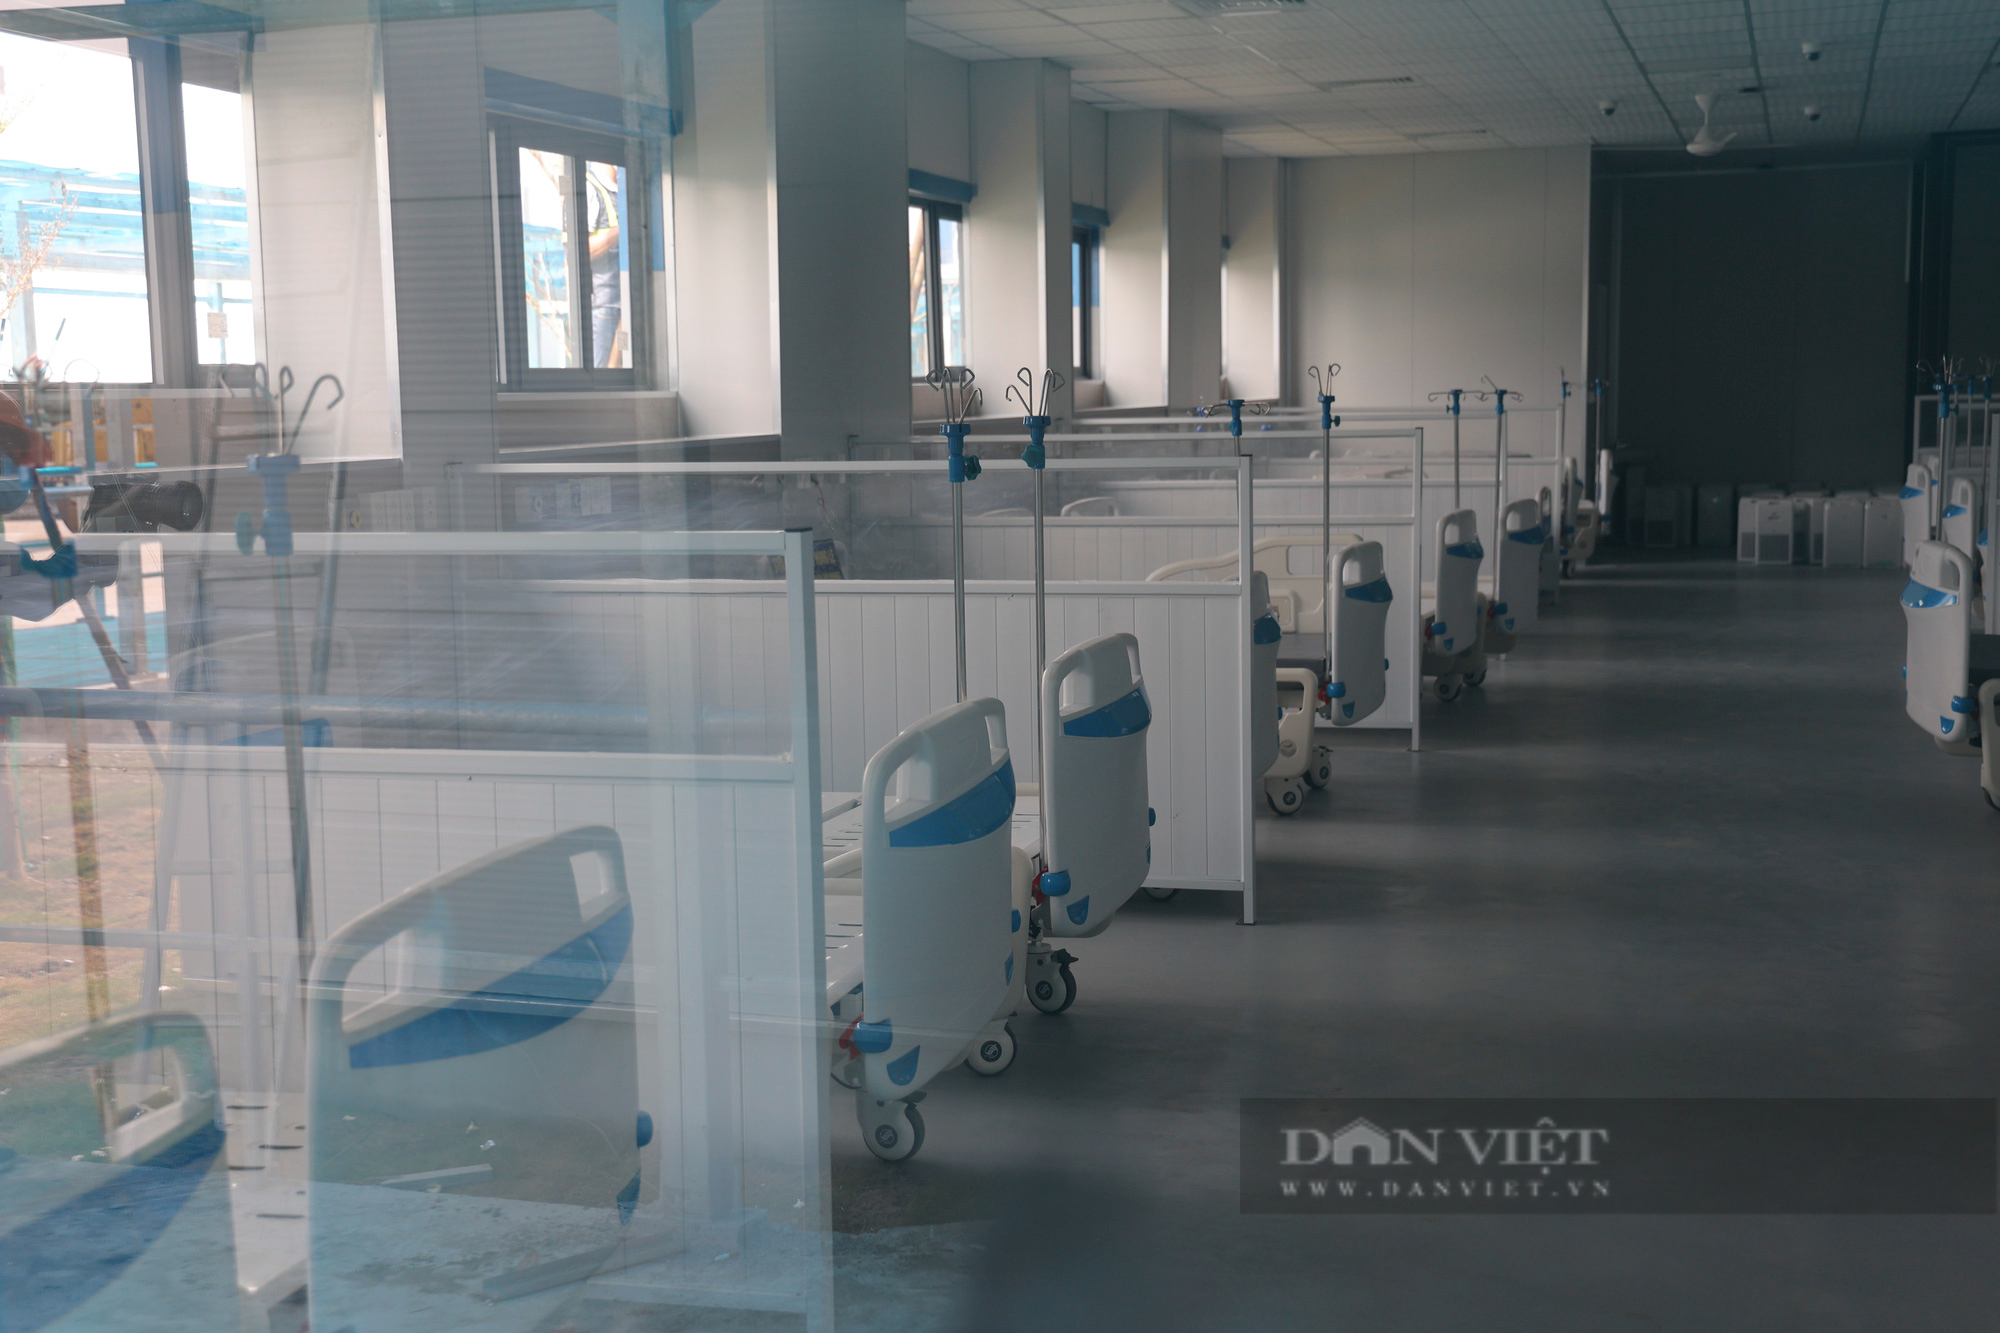 Cận cảnh trang thiết bị, máy móc hiện đại bên trong bệnh viện dã chiến điều trị bệnh nhân Covid-19 lớn nhất Hà Nội - Ảnh 3.